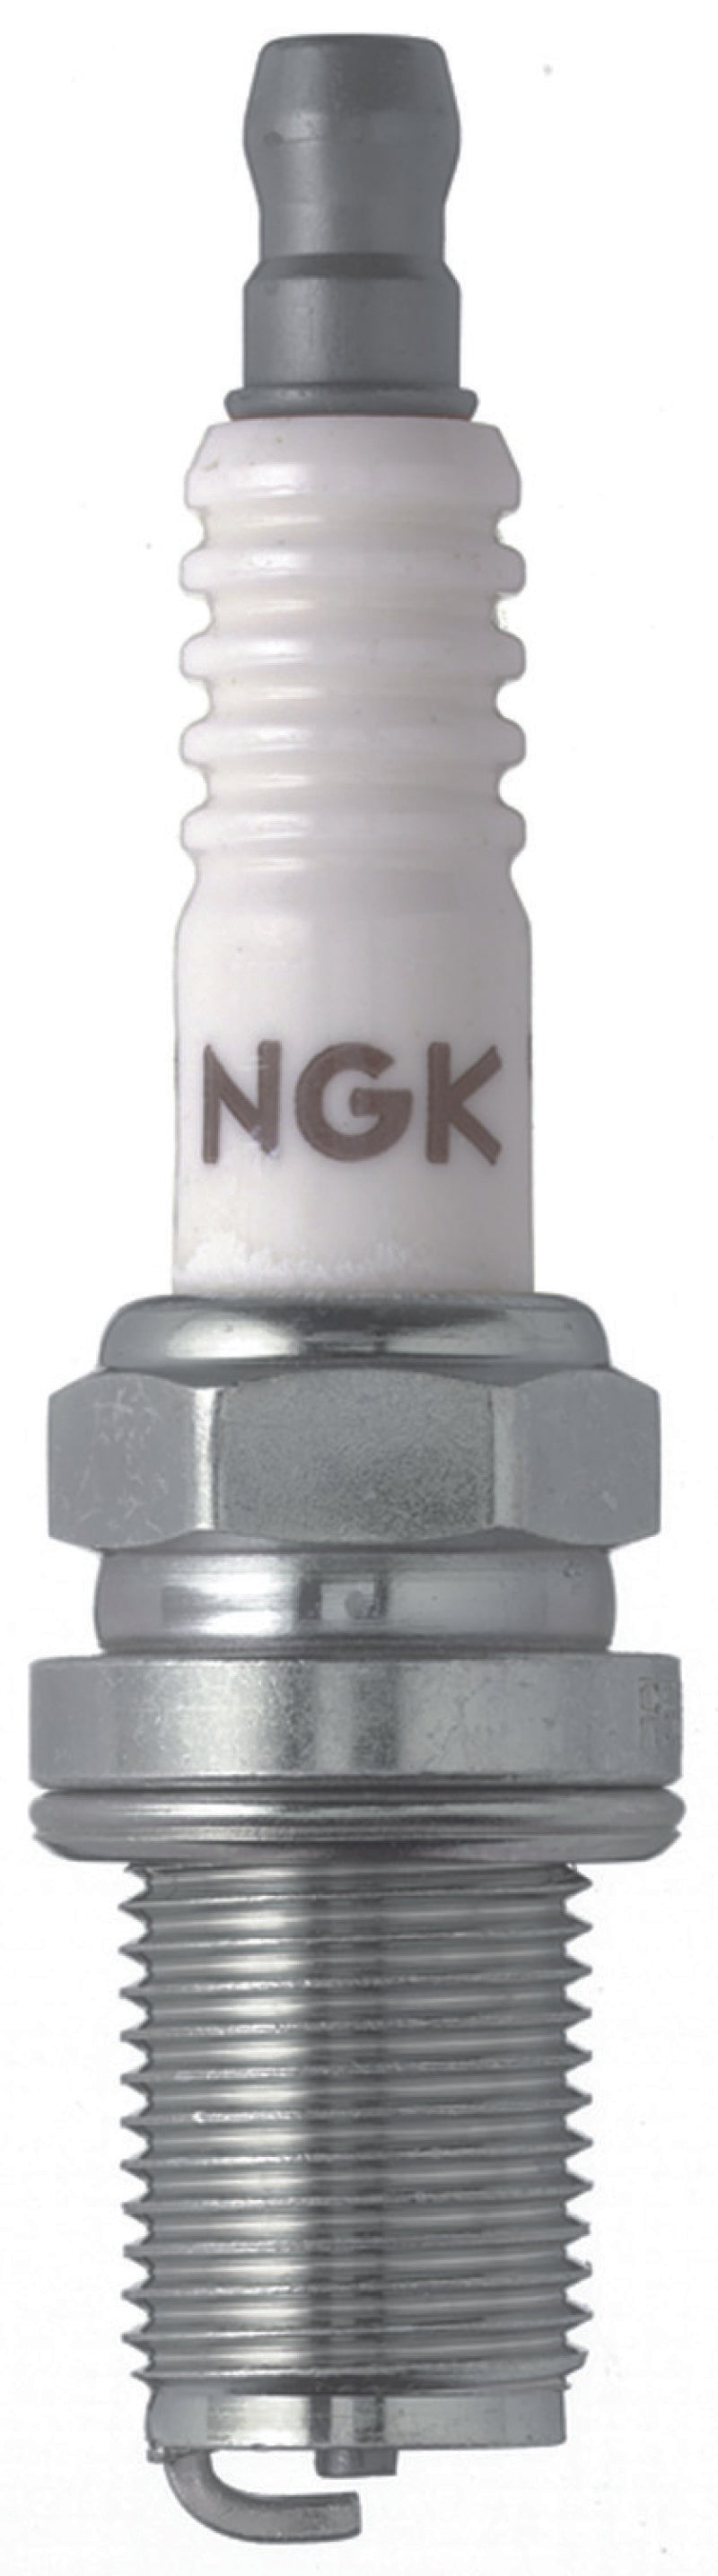 NGK Racing Spark Plug Box of 4 (R5671A-7).